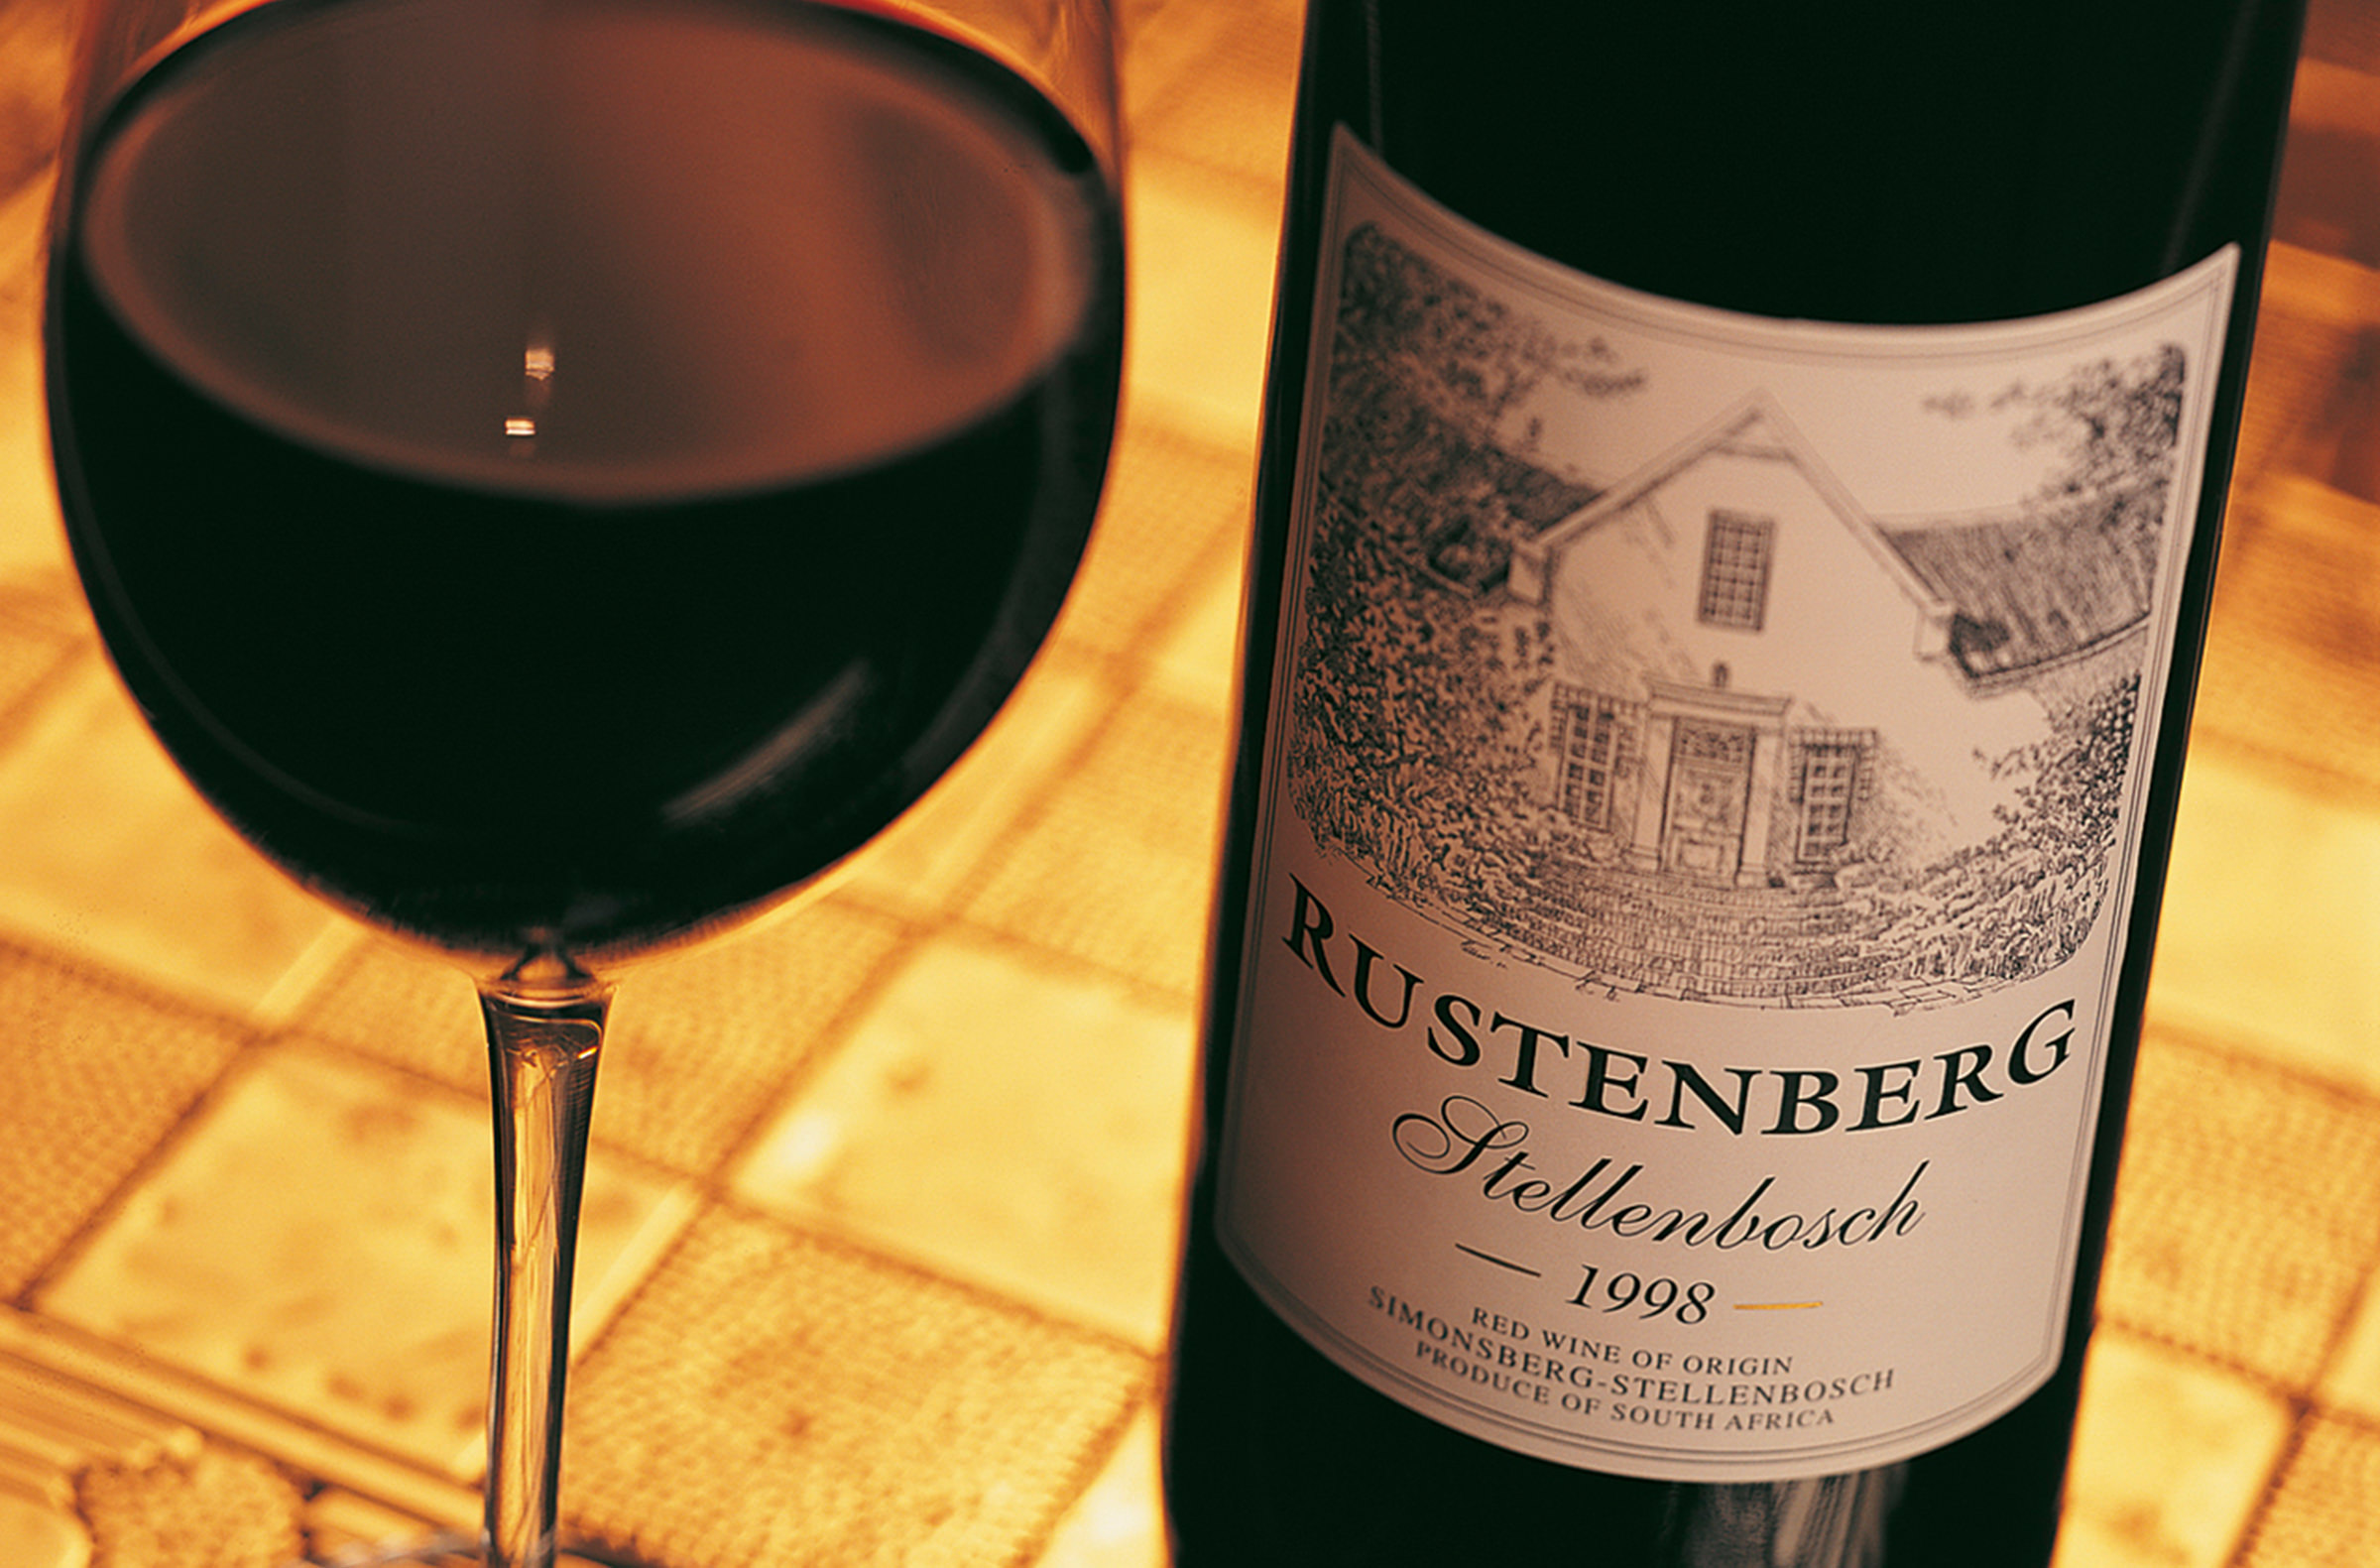 rustenberg wine label design